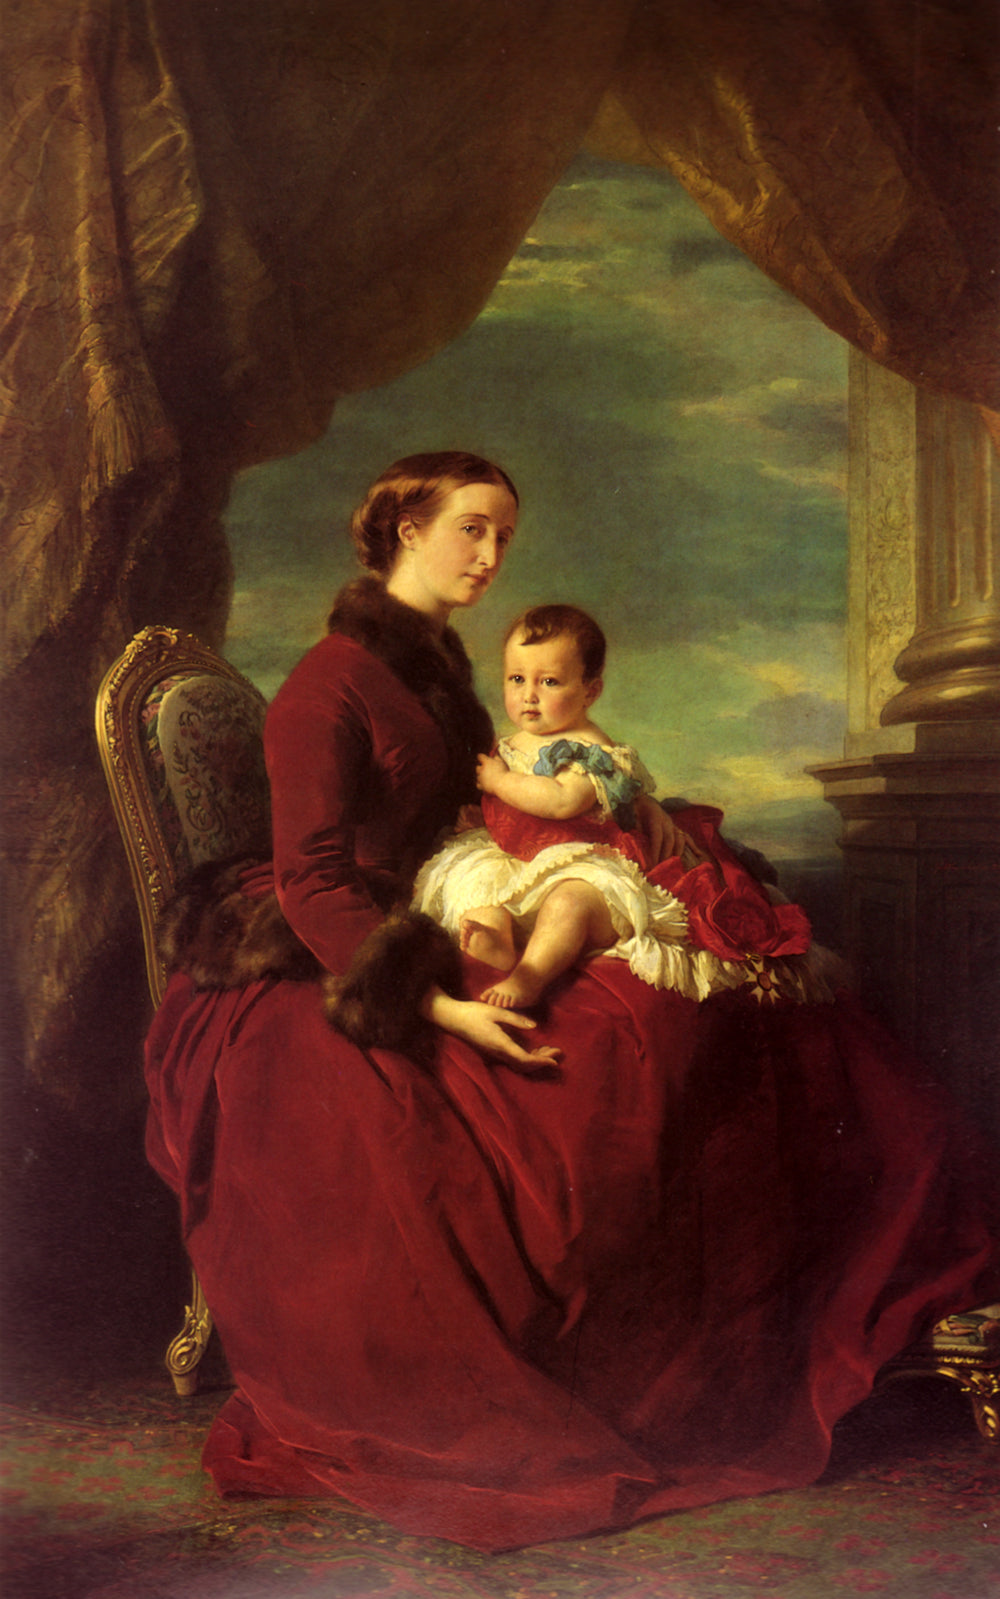 Napoleon III and Empress Eugenie